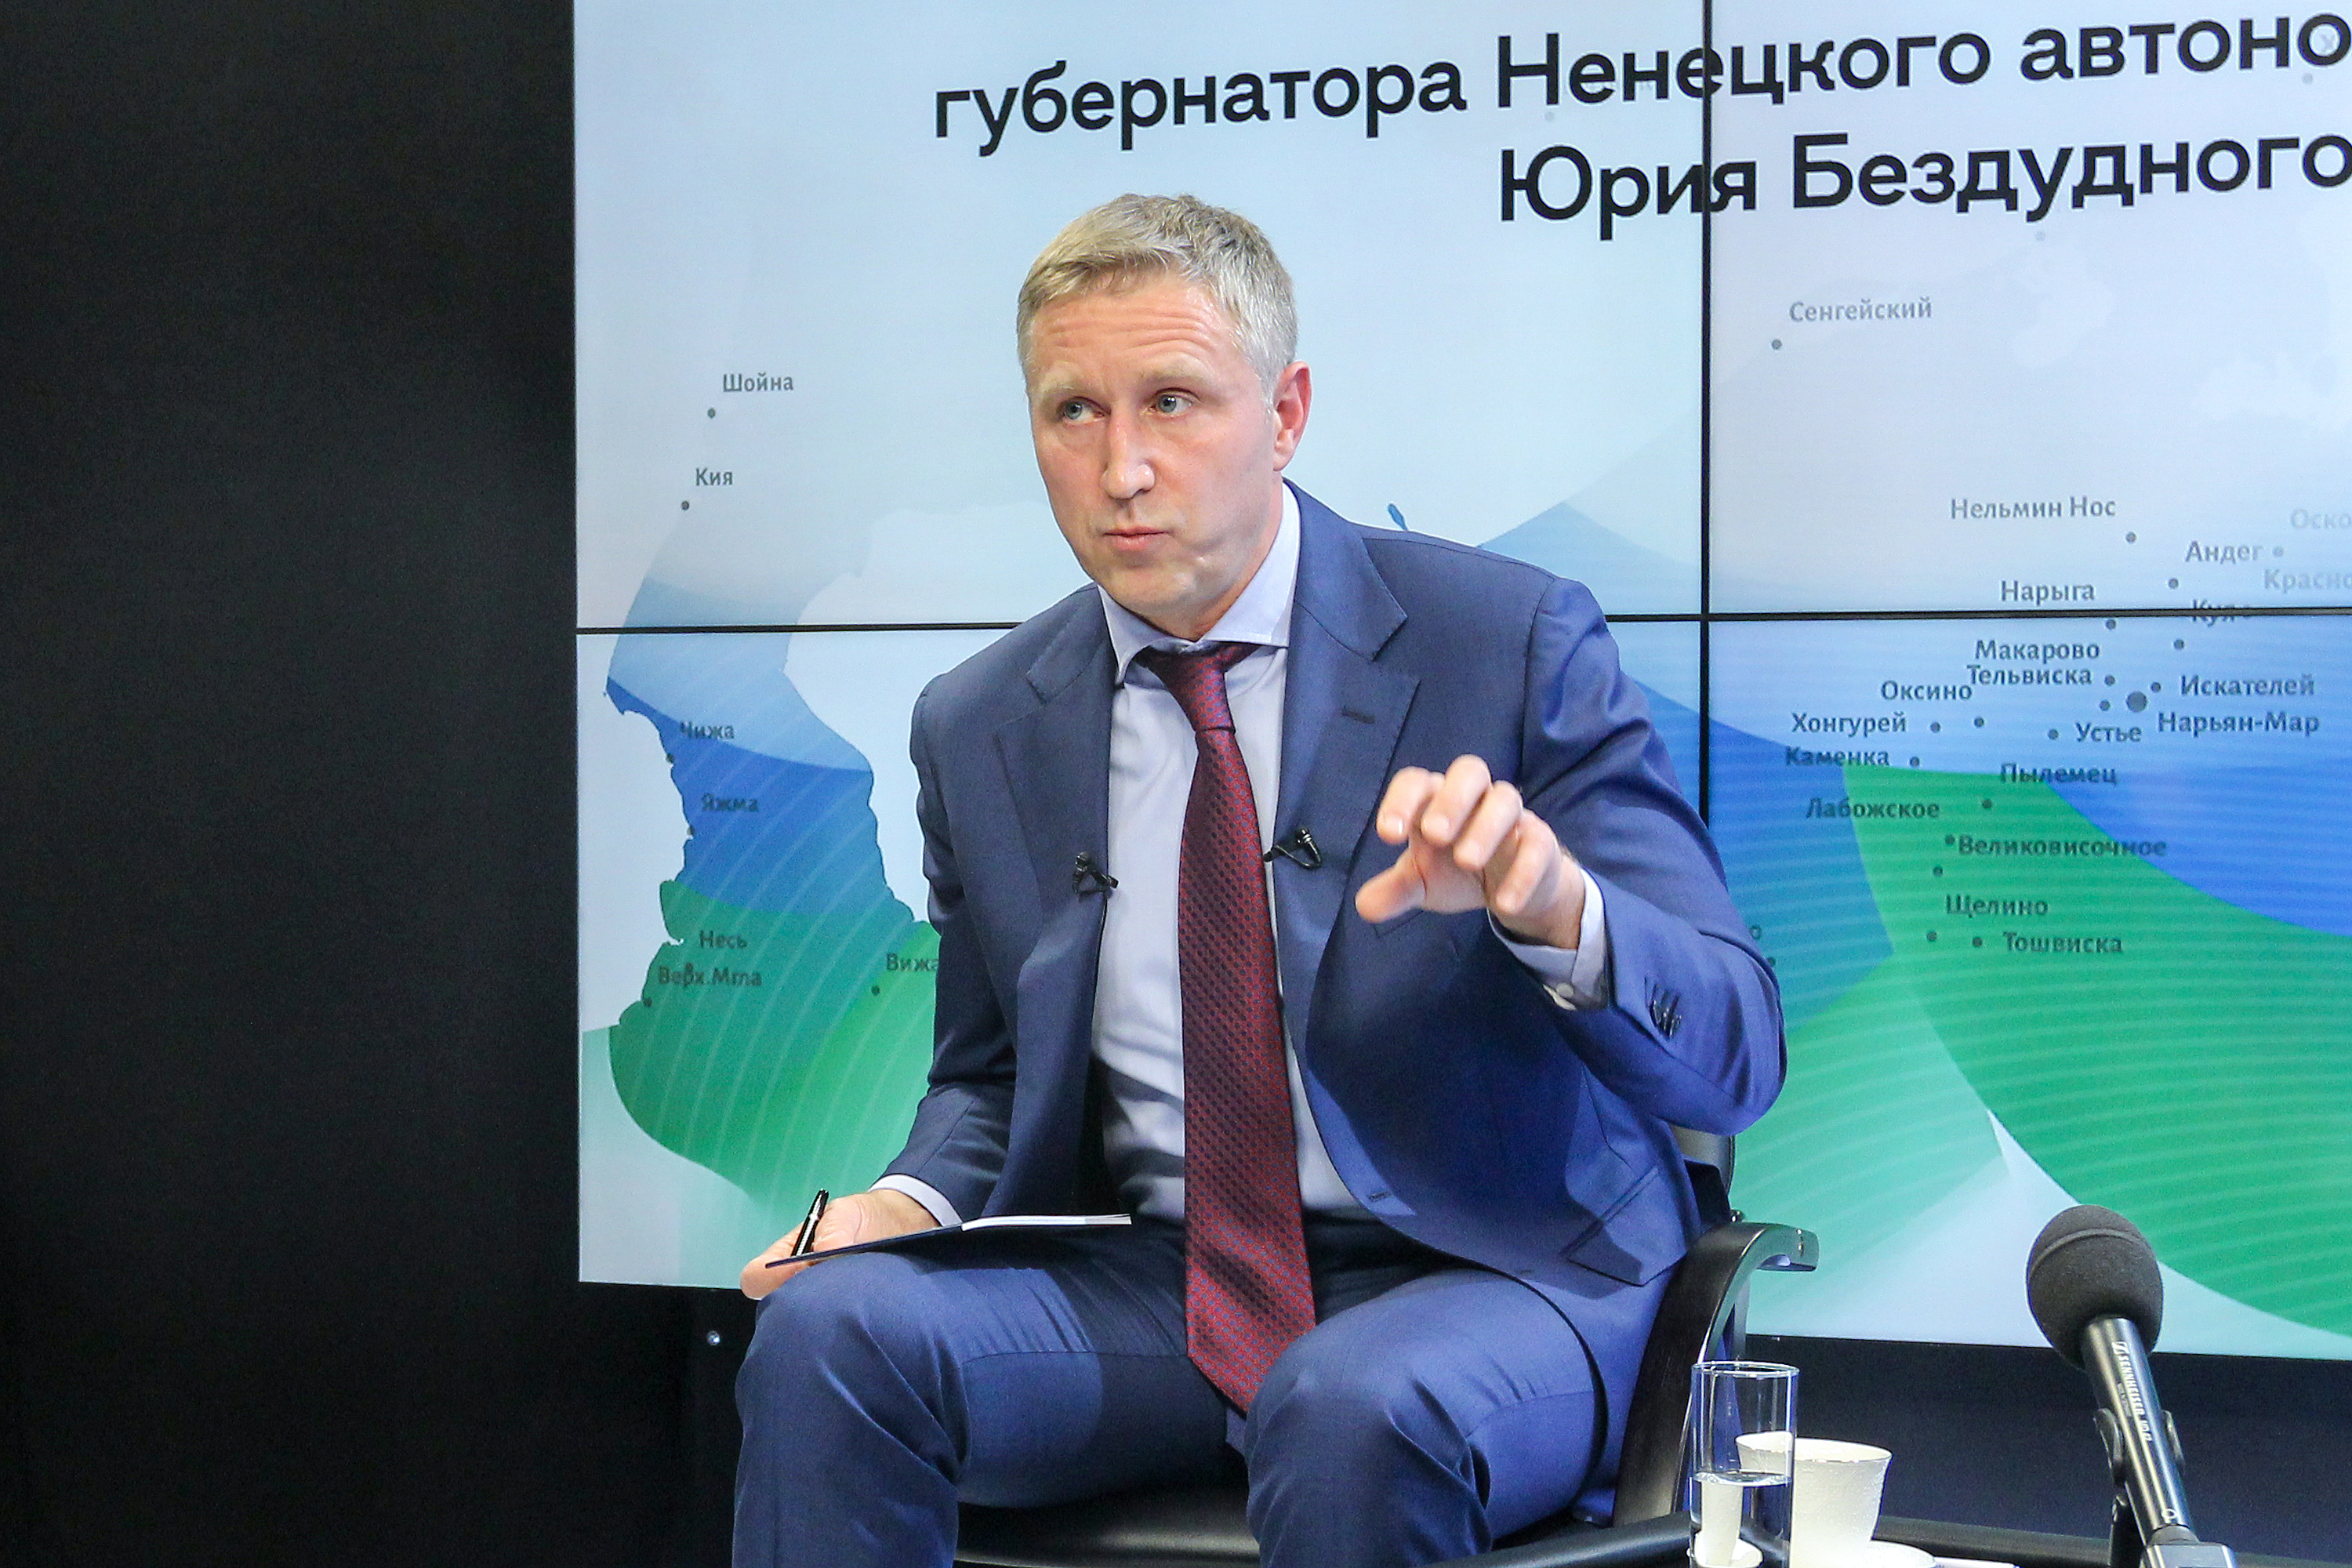 Юрий Бездудный: «Отношения с федеральным центром строились и будут строиться по принципу партнёрства»